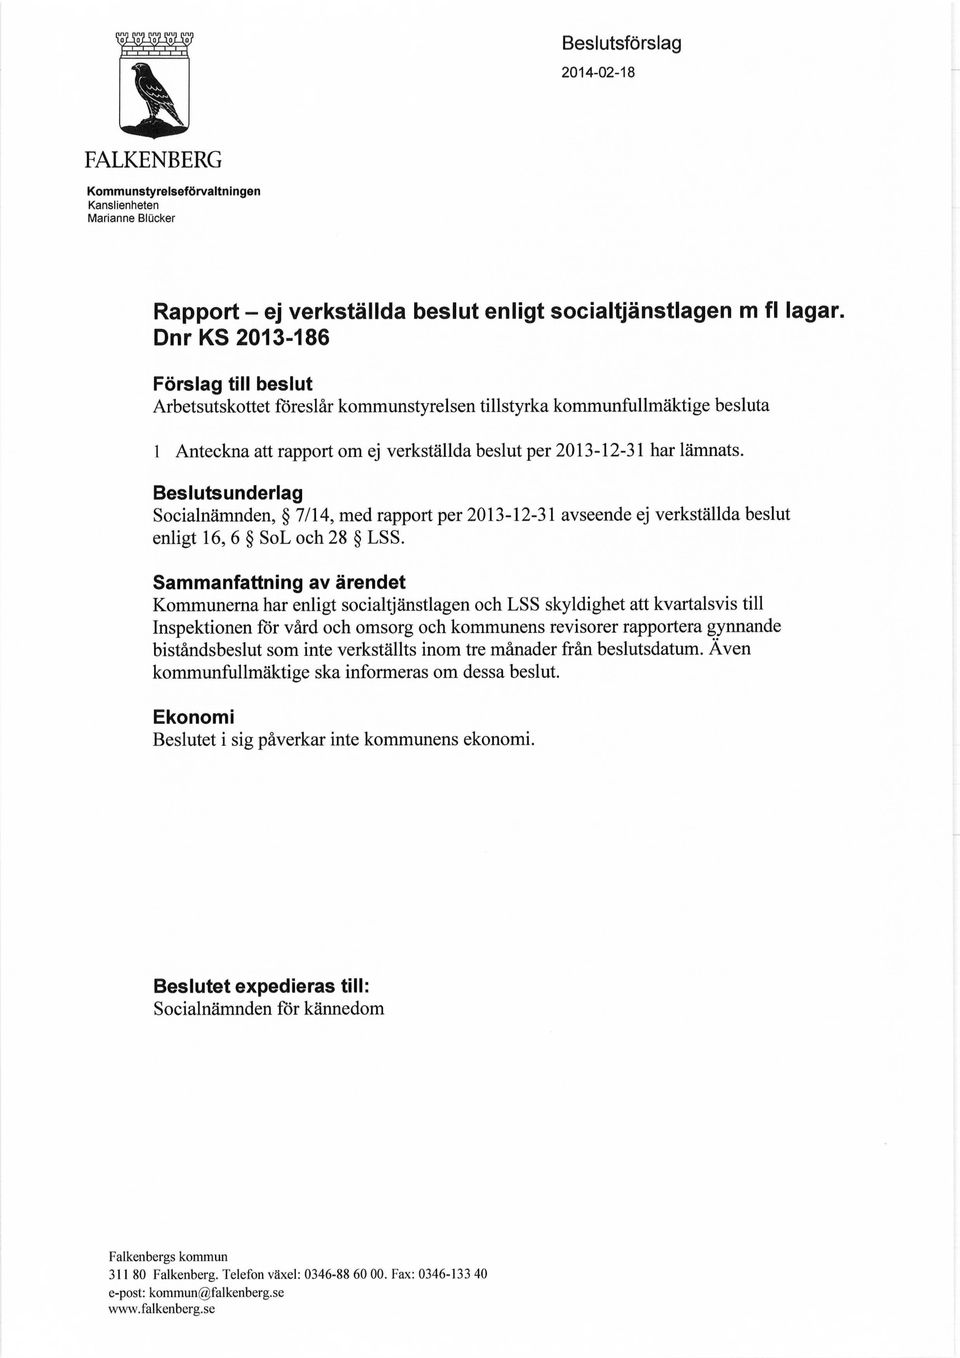 Beslutsunderlag Socialnämnden, 7/14, med rapport per 2013-12-31 avseende ej verkställda beslut enligt 16, 6 SoL och 28 LSS.